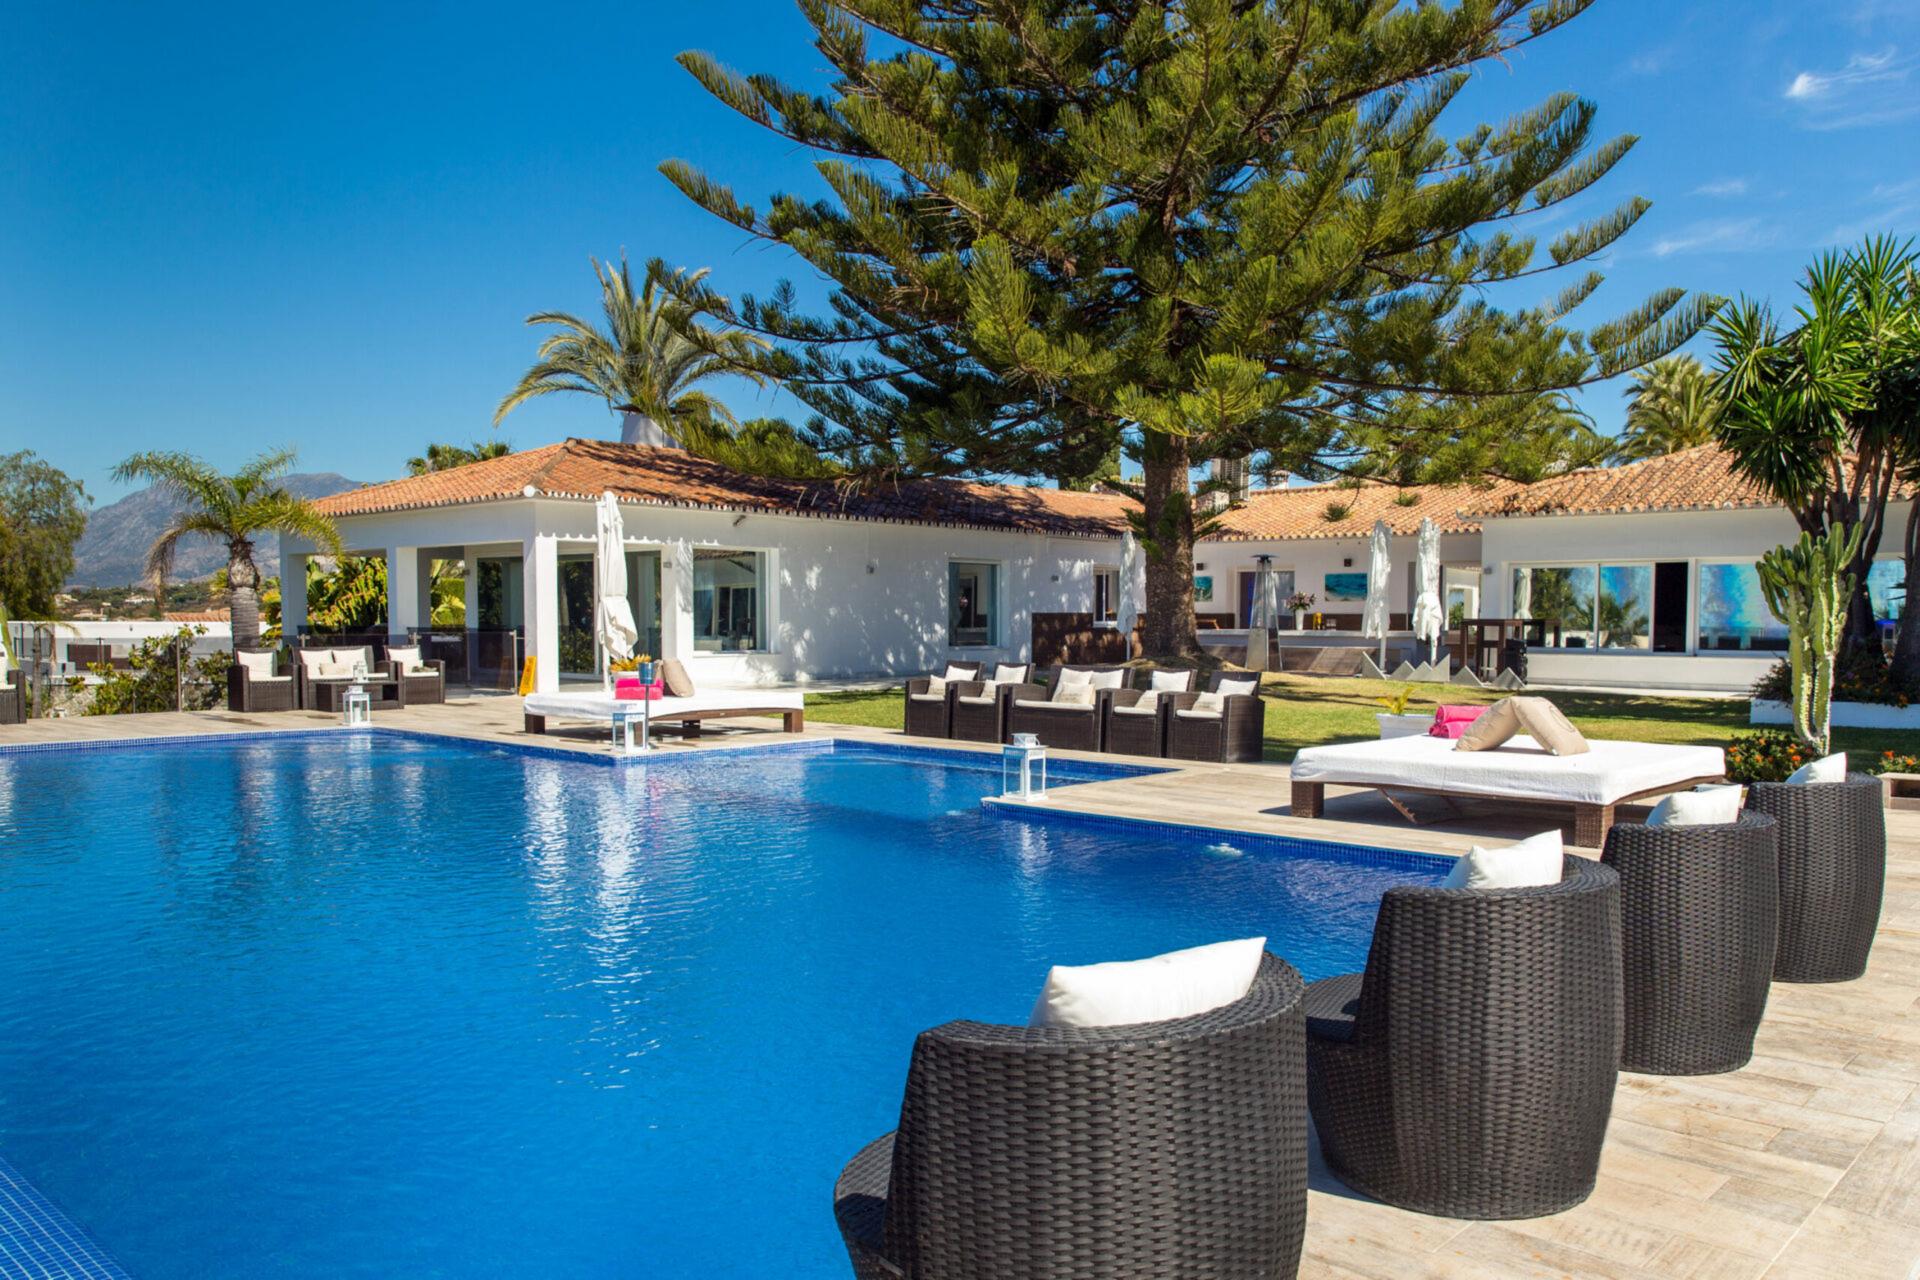 Dejlig otte værelses, østvendt villa bygget på en 3000m2 grund med fantastisk panoramaudsigt over Middelhavet